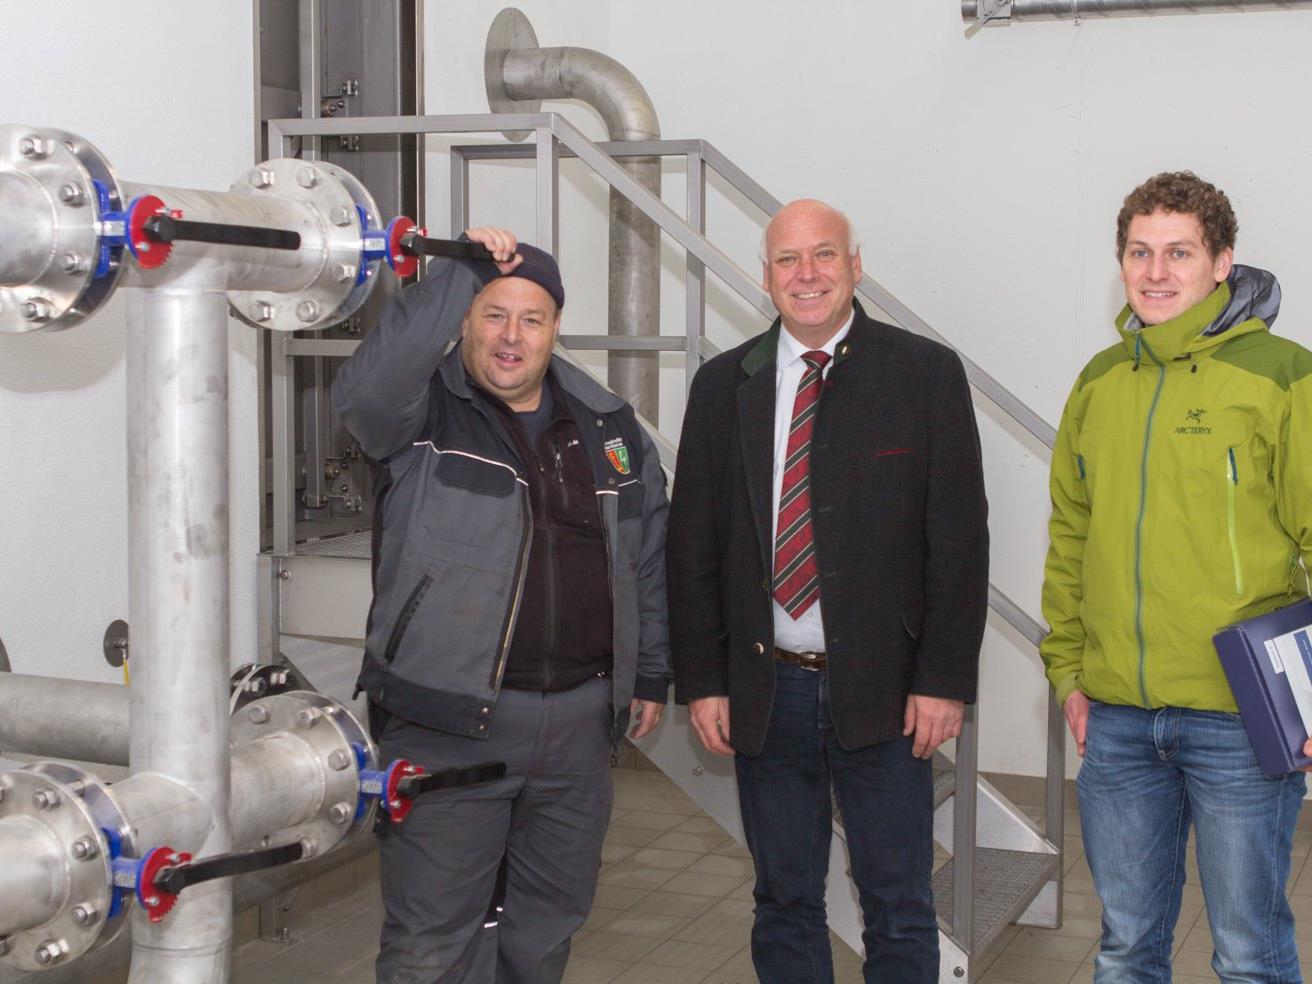 Bürgermeister Wachter und Wassermeister Bott freuen sich über eine der besten und moderstens Wasserversorgungsanlagen in Vorarlberg.